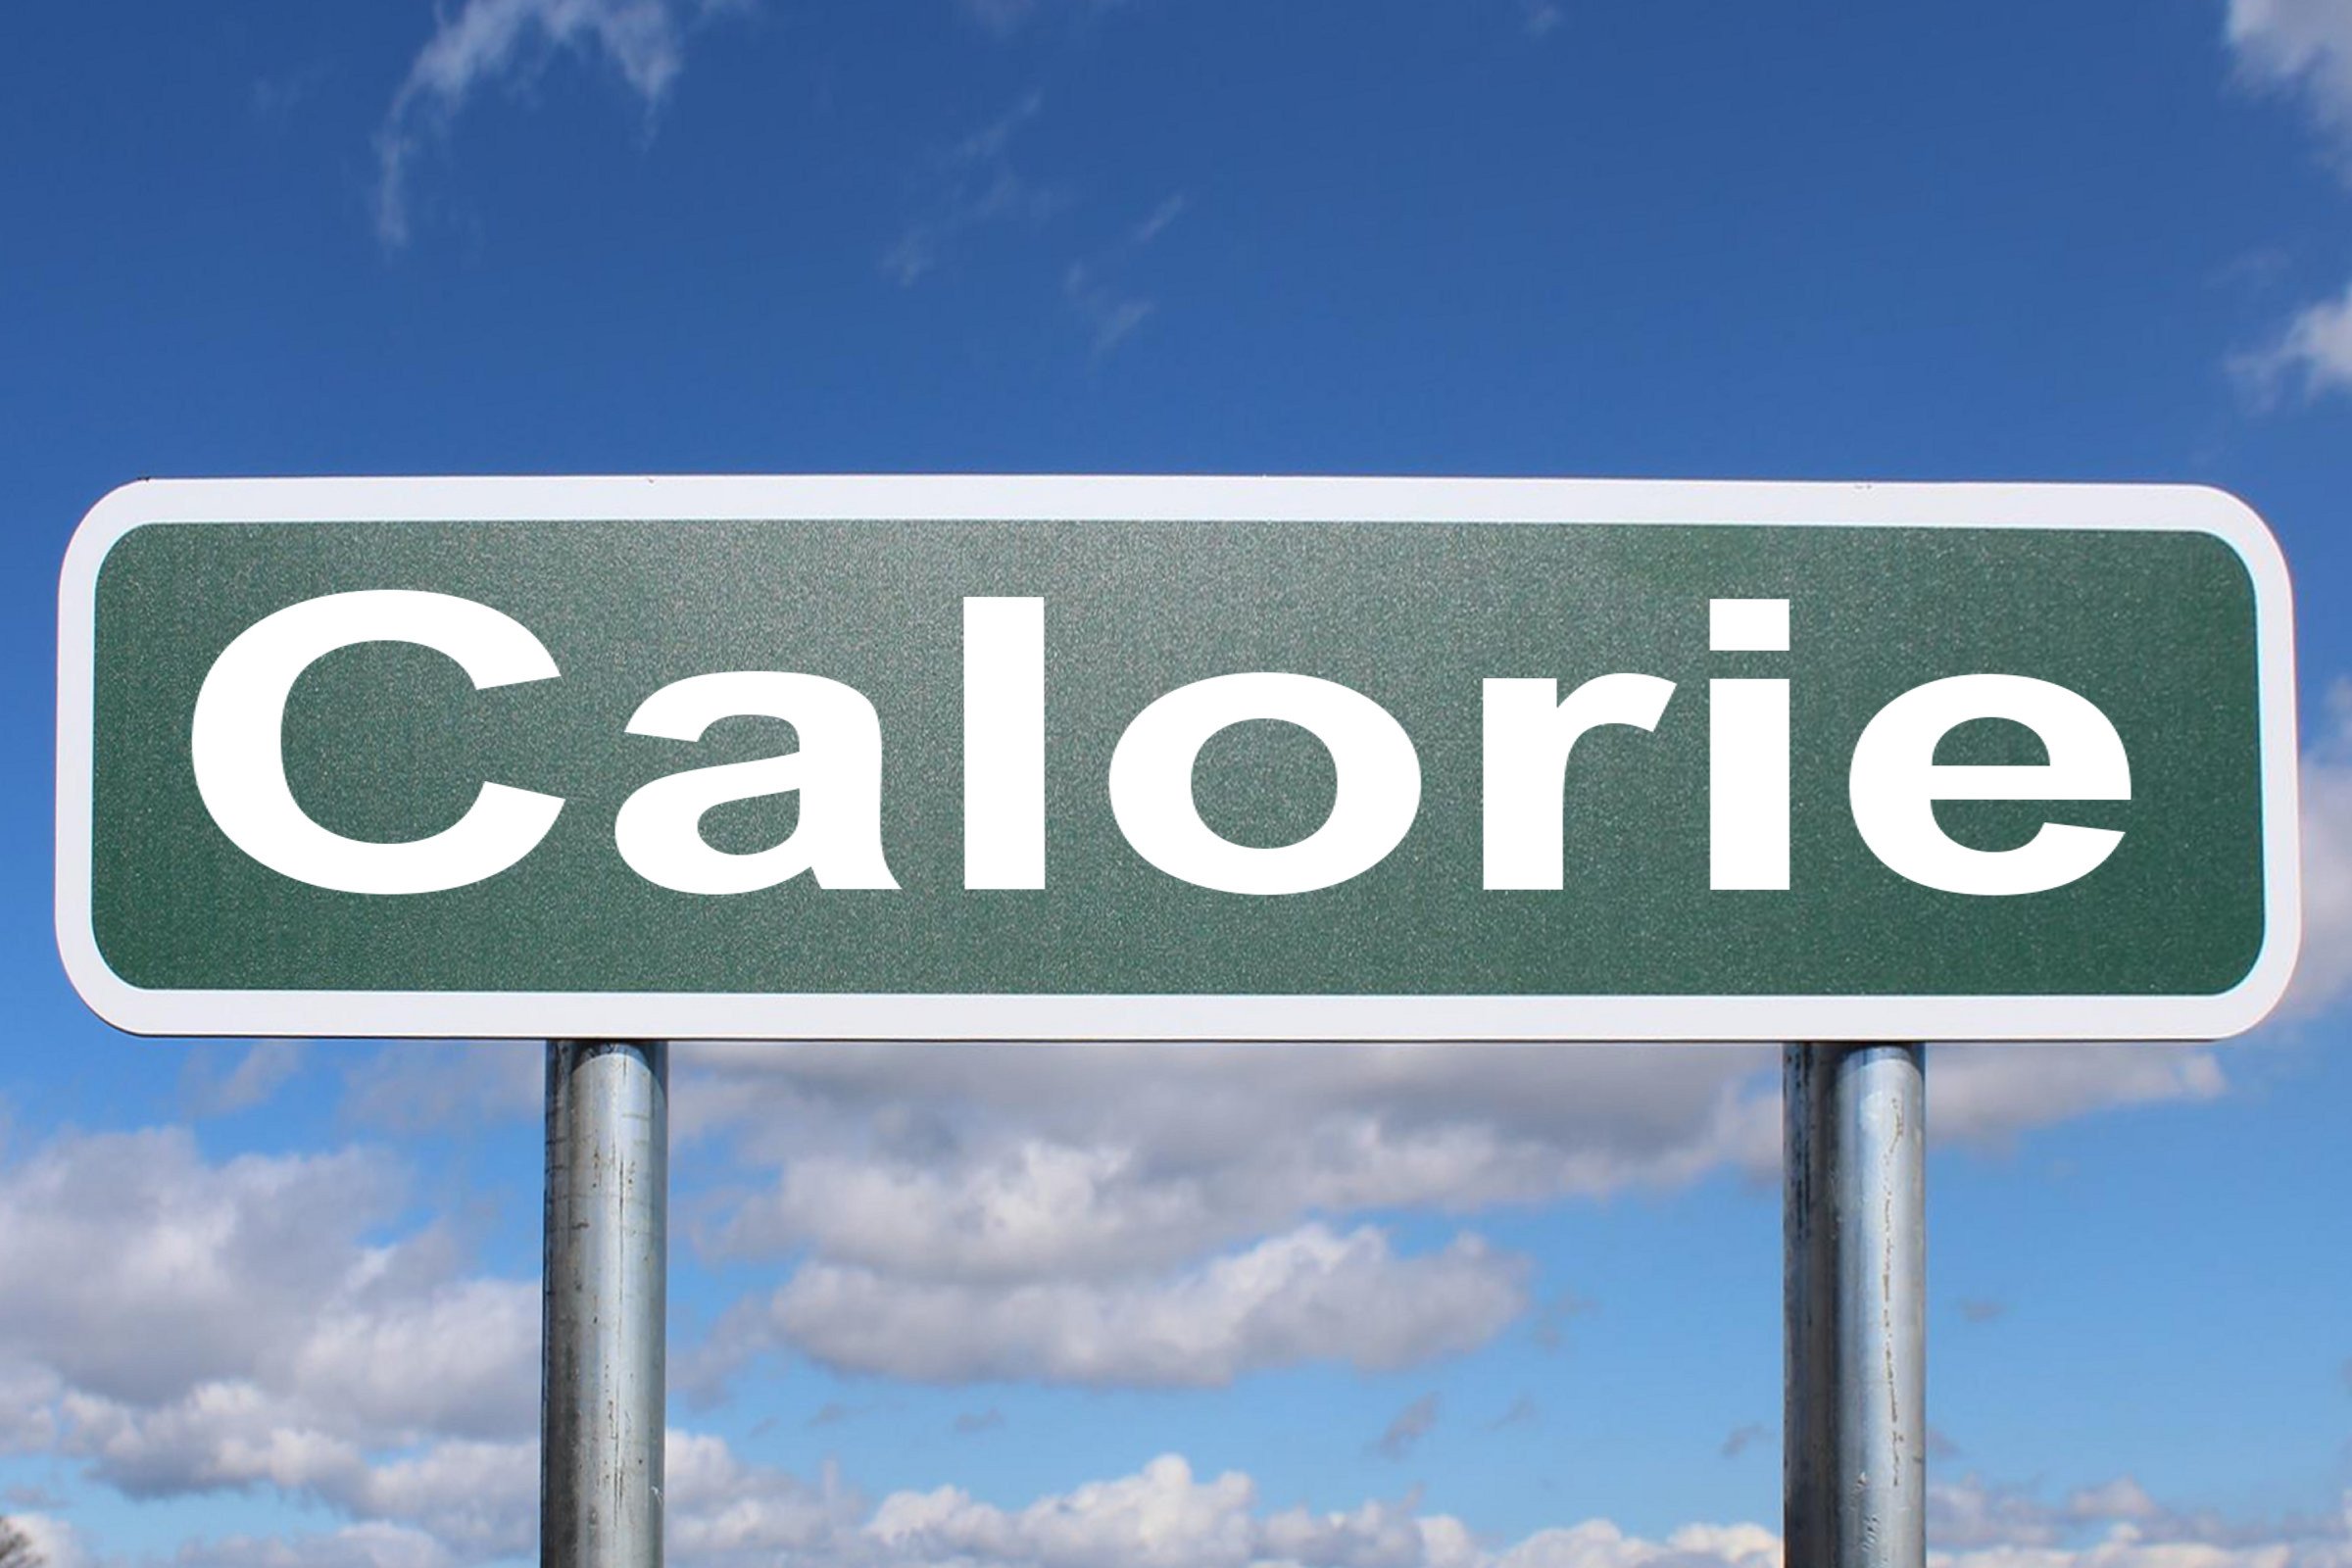 calorie